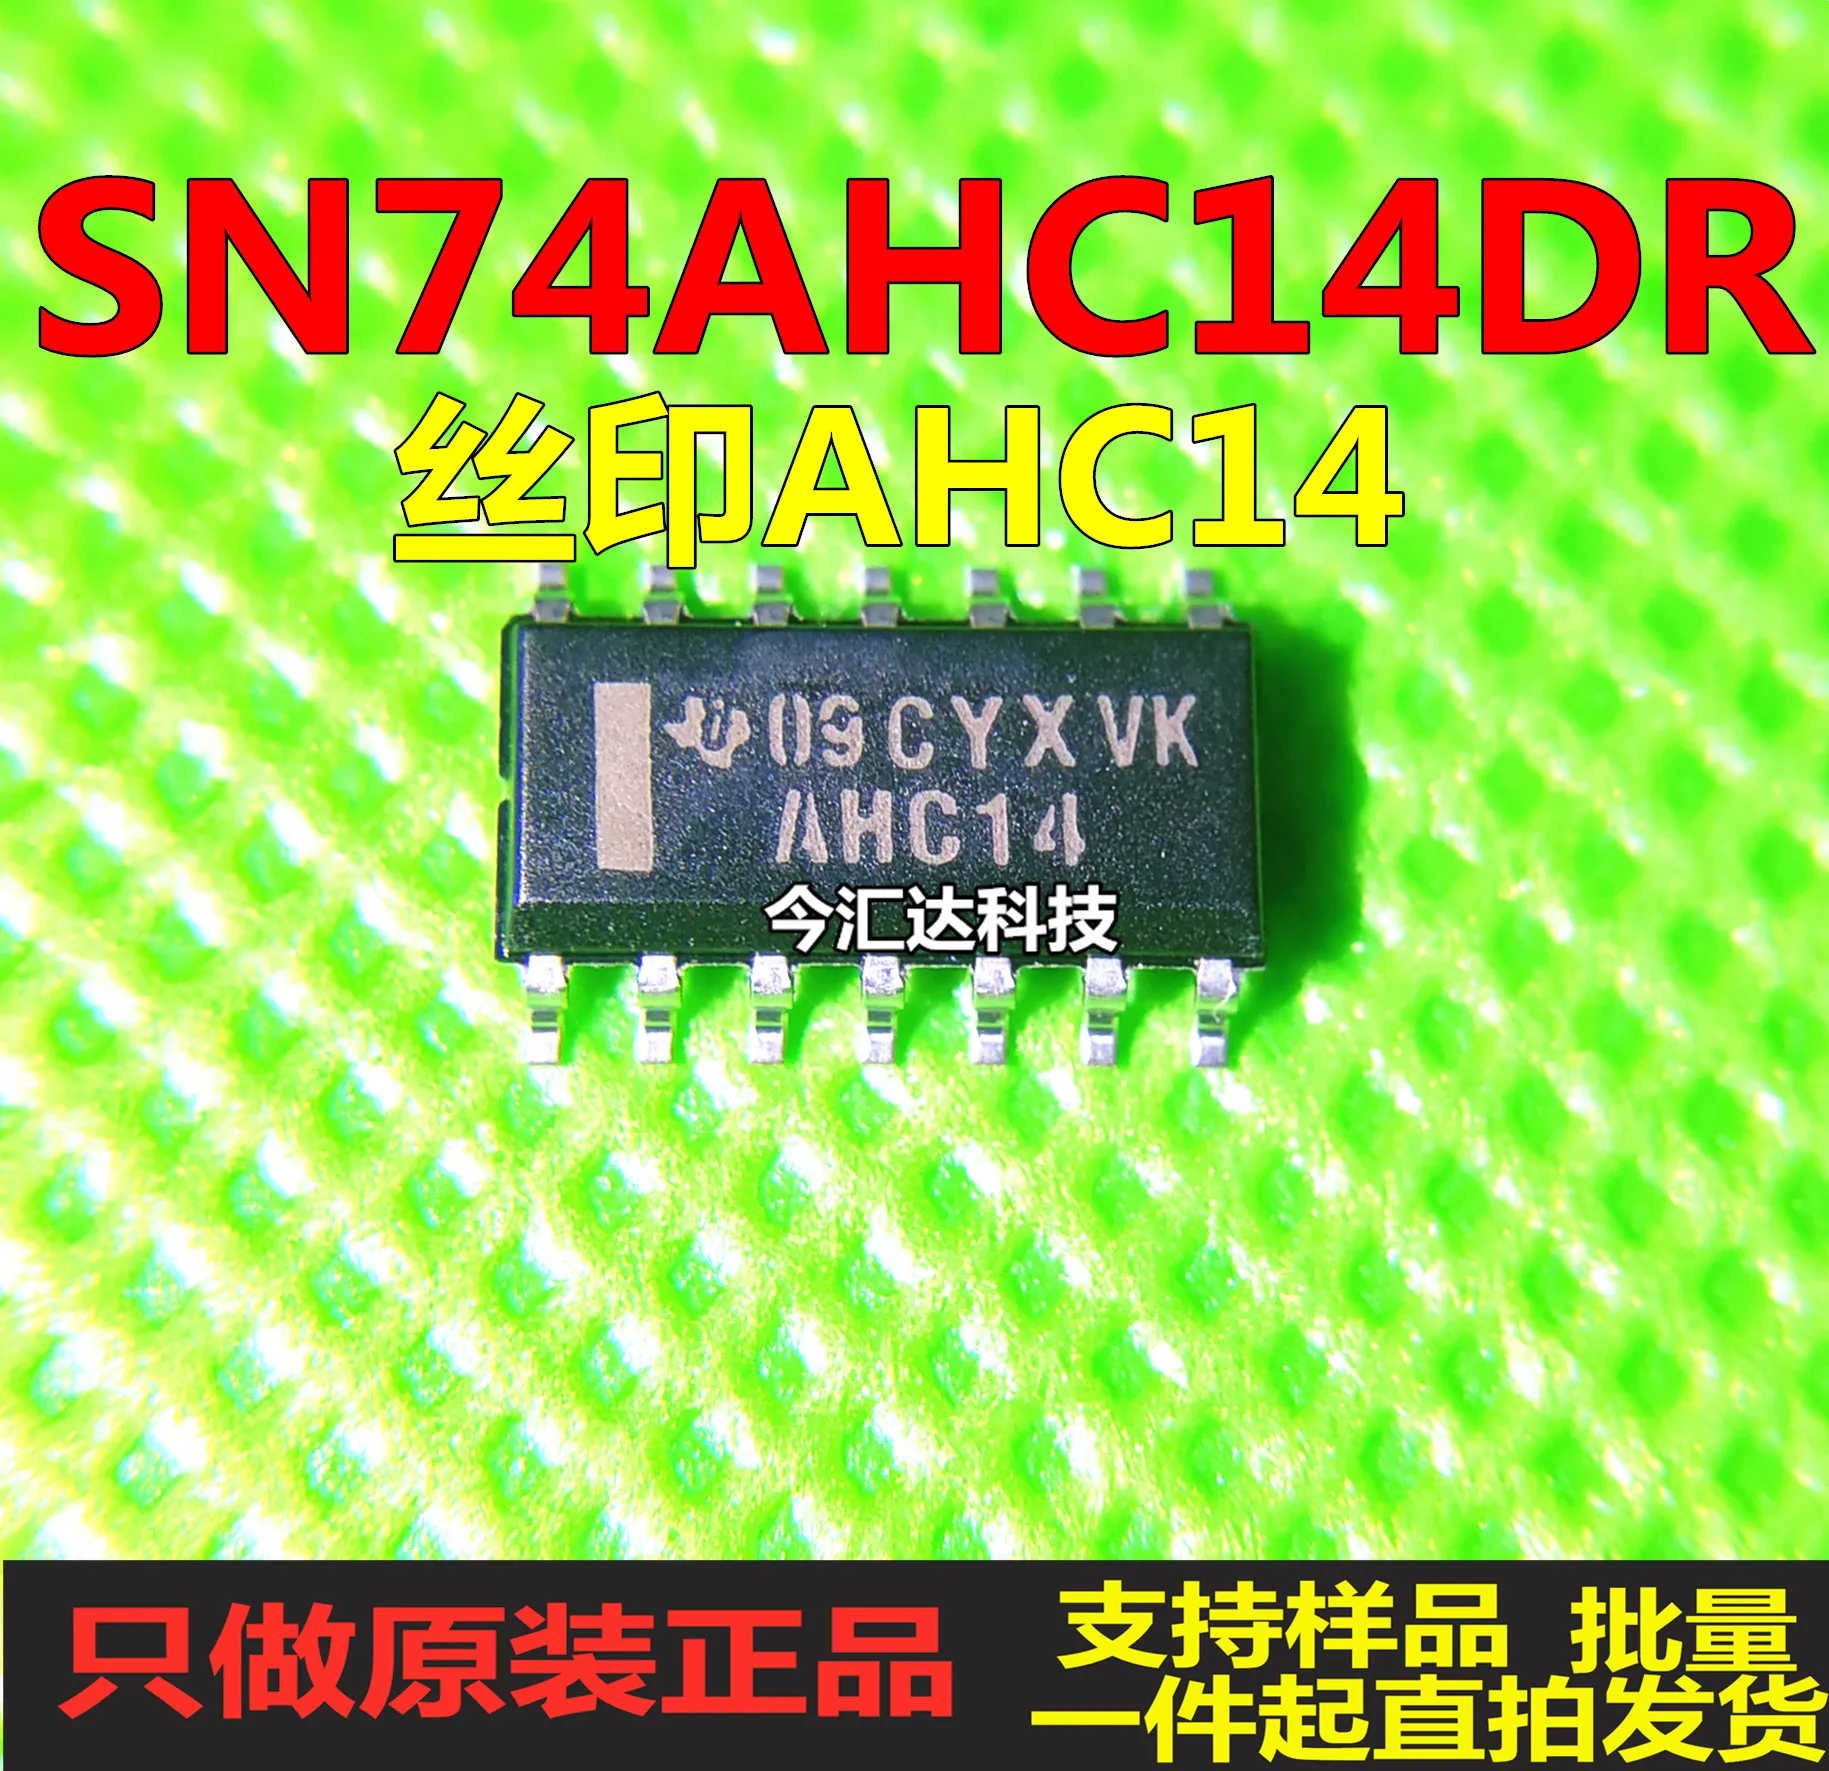 

20pcs original new 20pcs original new SN74AHC14DR screen printing AHC14 SOP14 six-way Schmidt trigger inverter